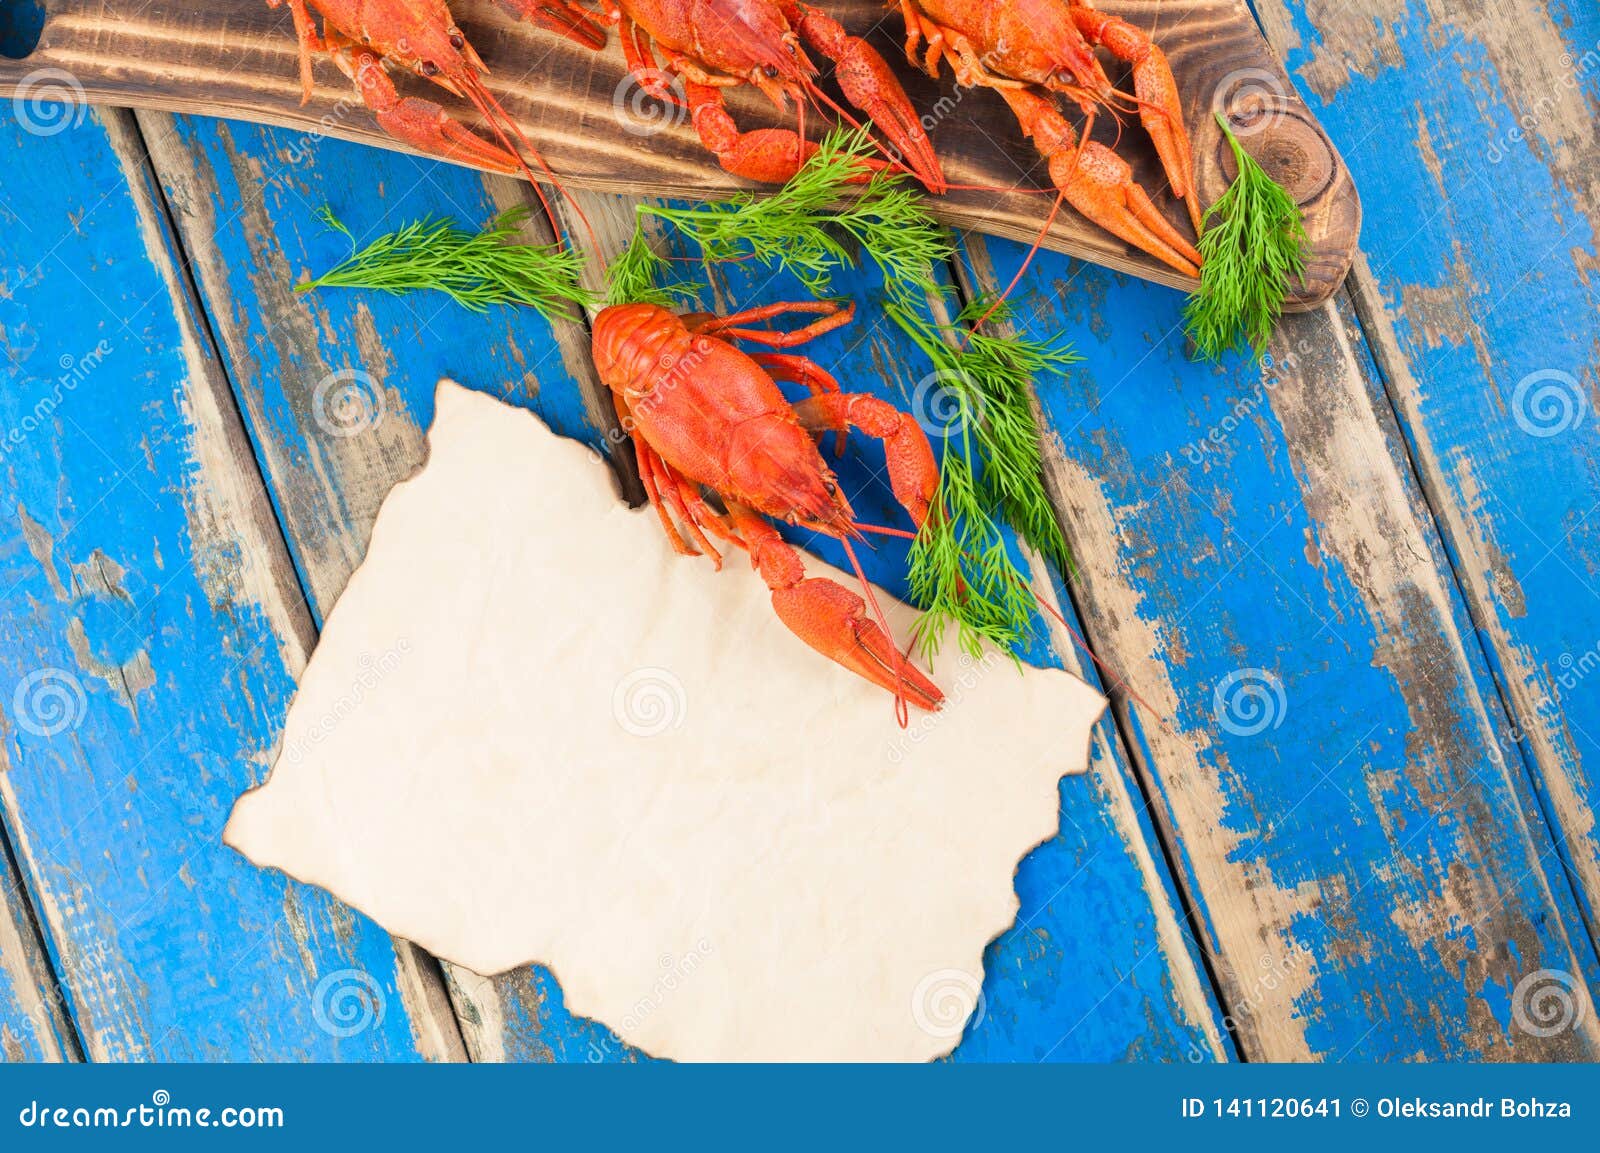 One Whole Red Boiled Crayfish Beside Many Crawfish On ...